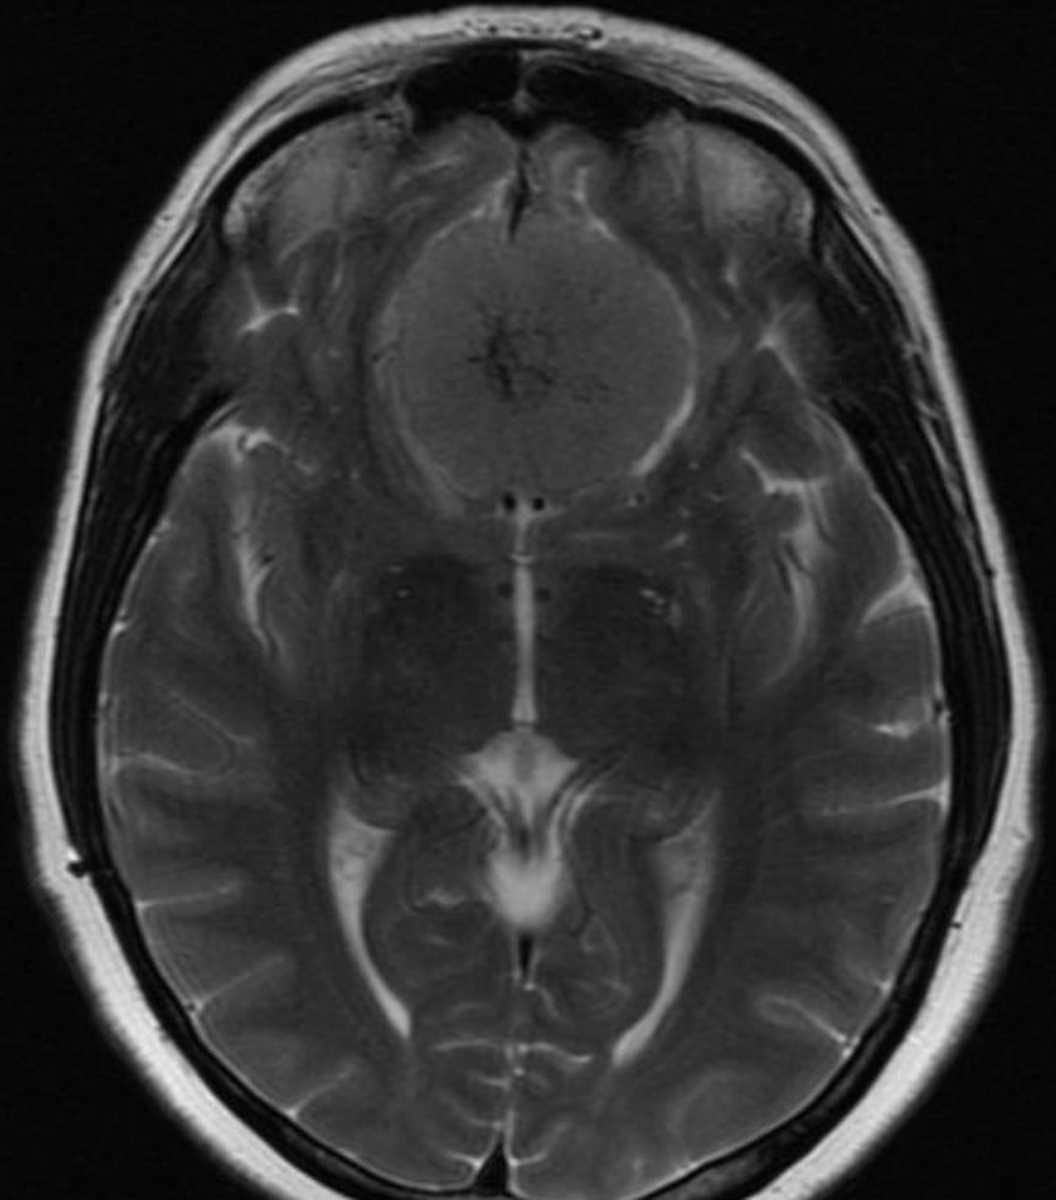 Meningioma (Planum Sphenoidale) - CTisus CT Scan